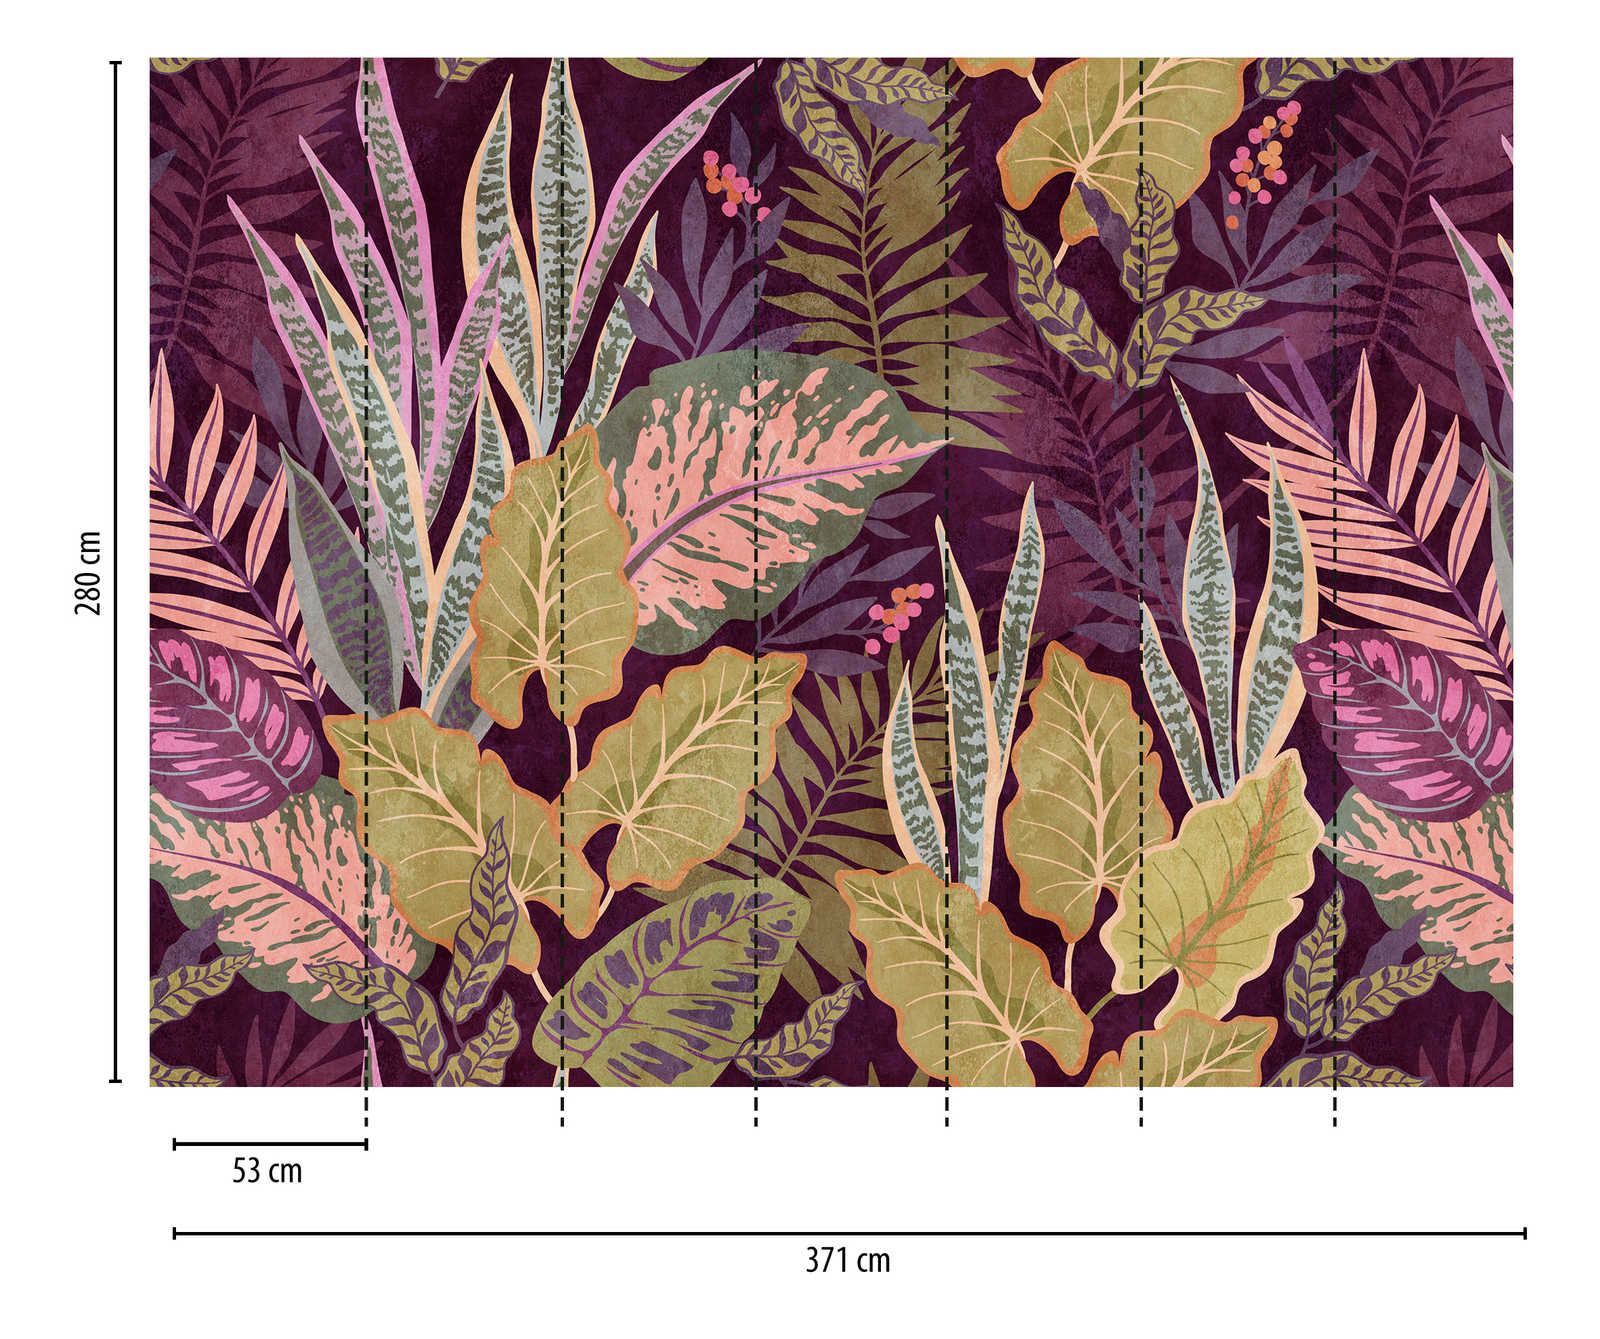             Wallpaper novelty | motif wallpaper XXL leaves in Scandi style
        